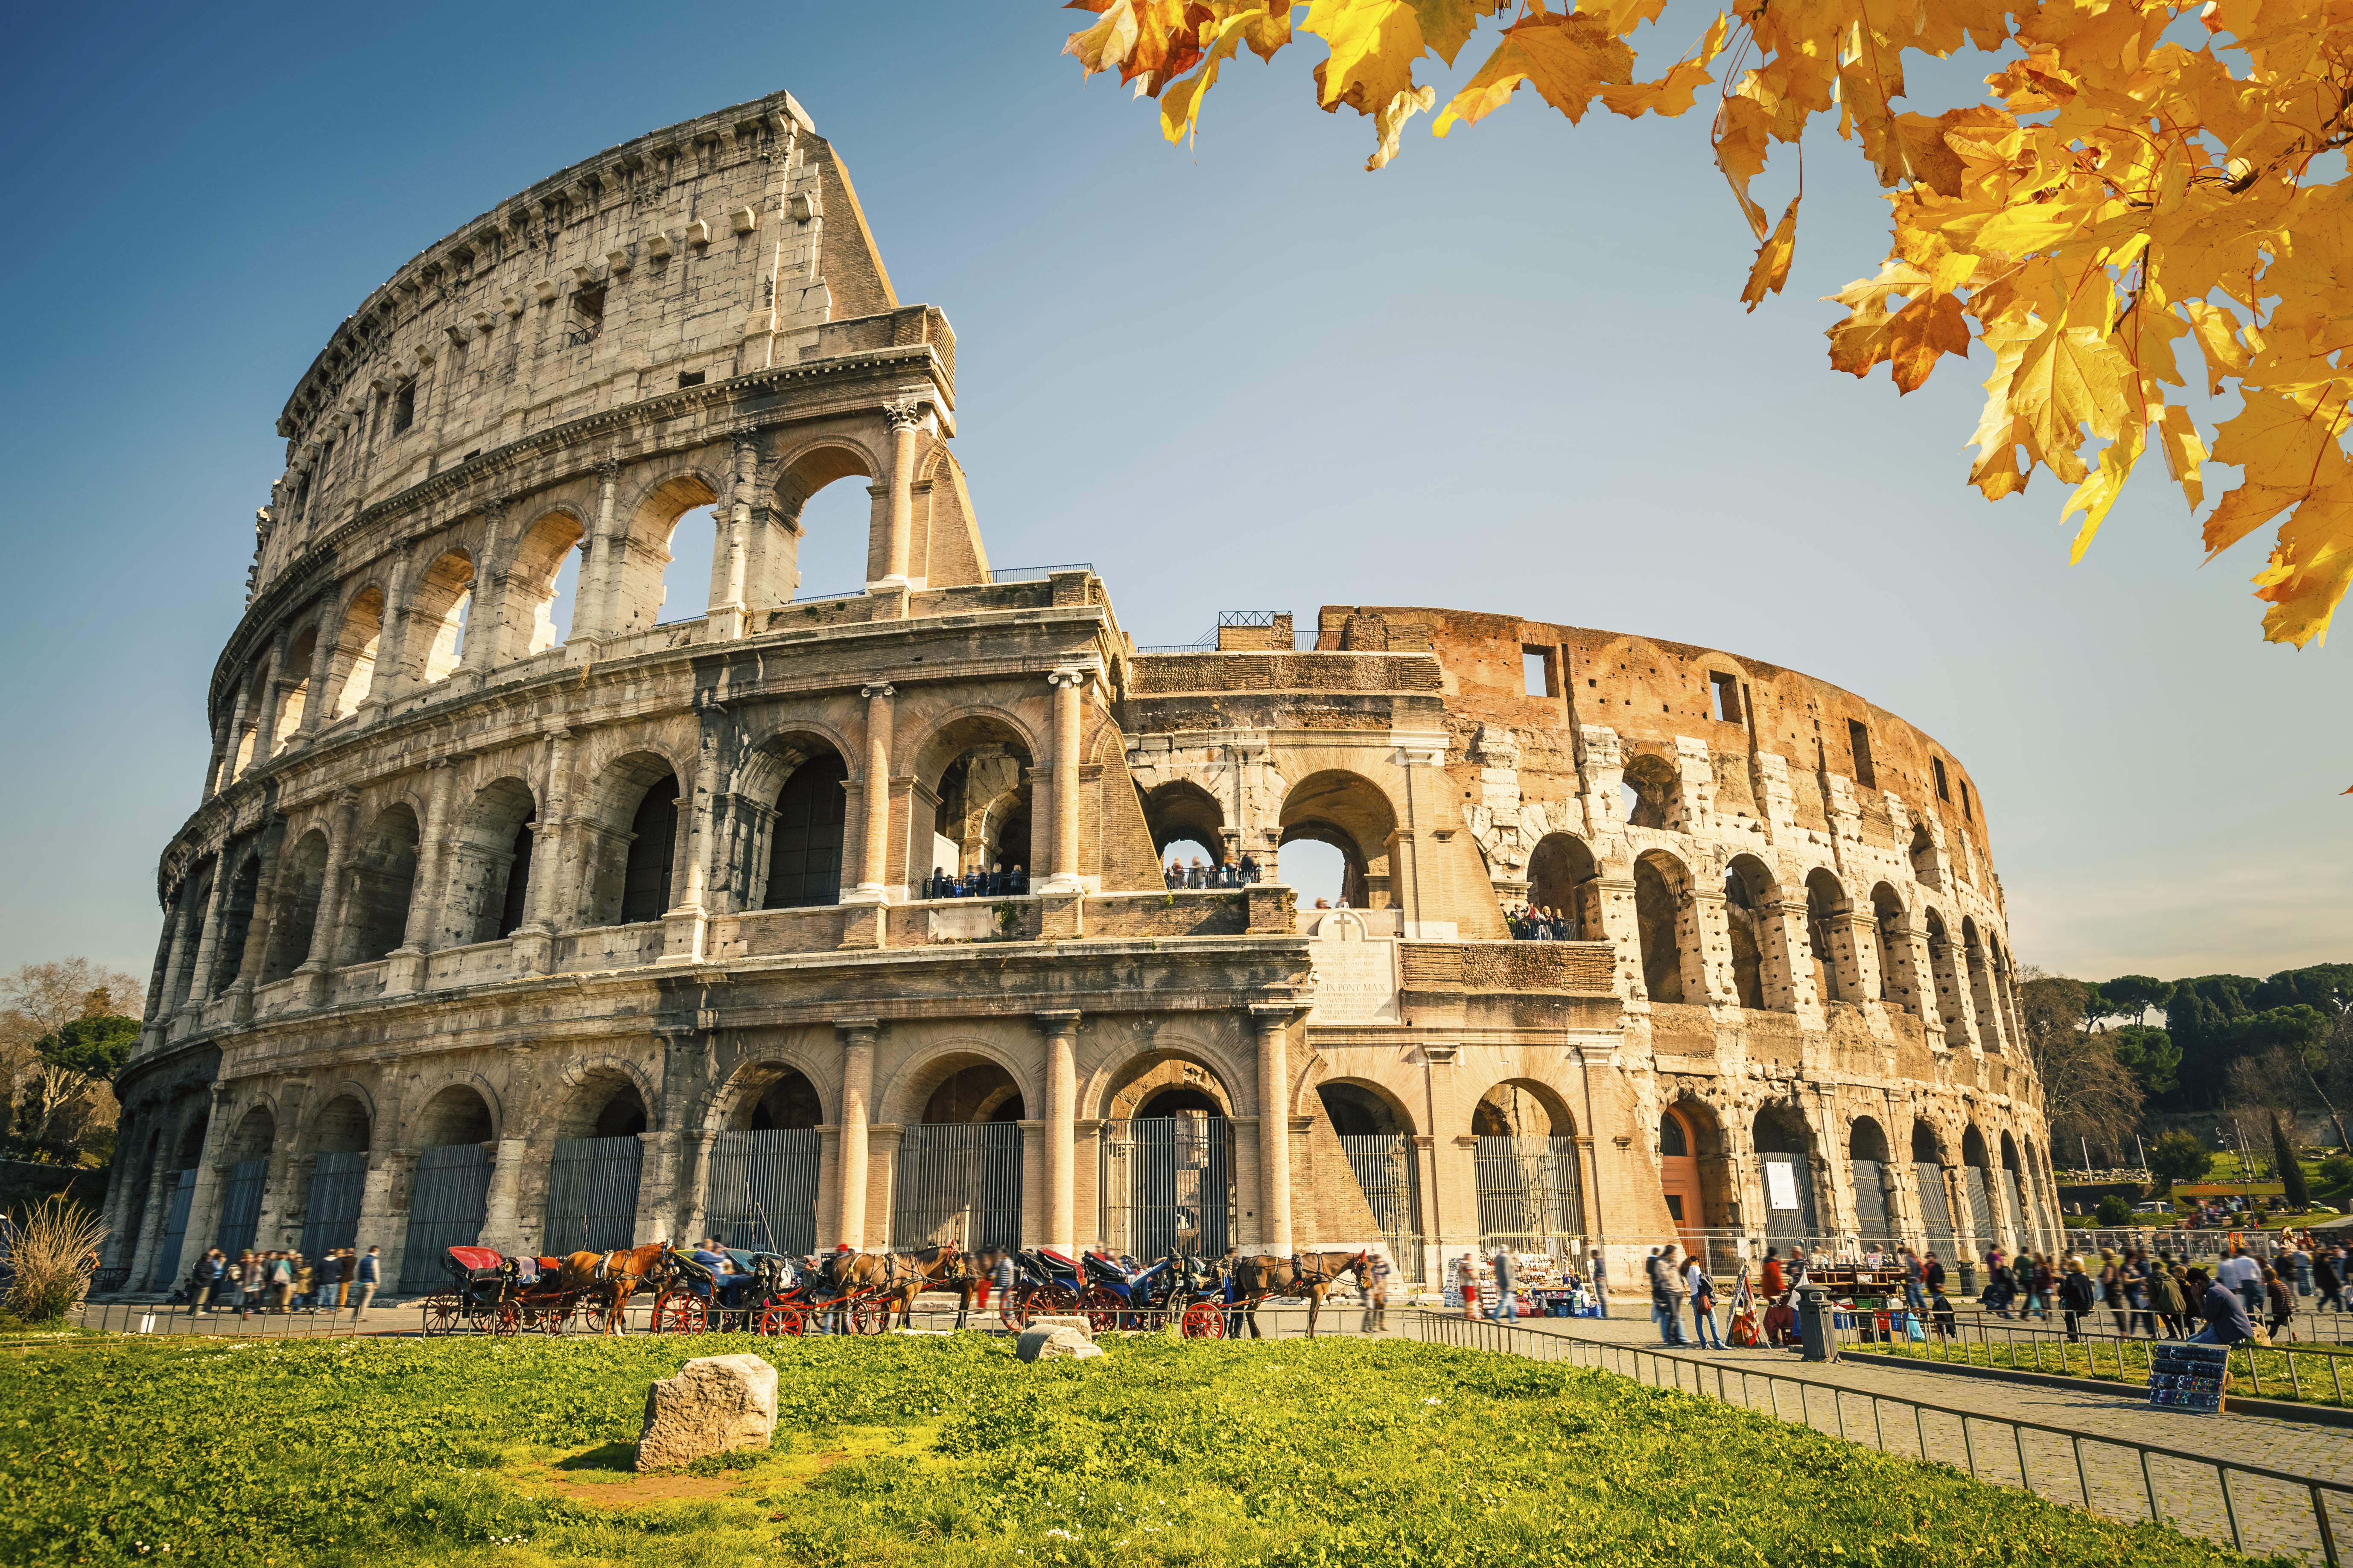 Colosseum, Rome (Photo: skyscanner.com)